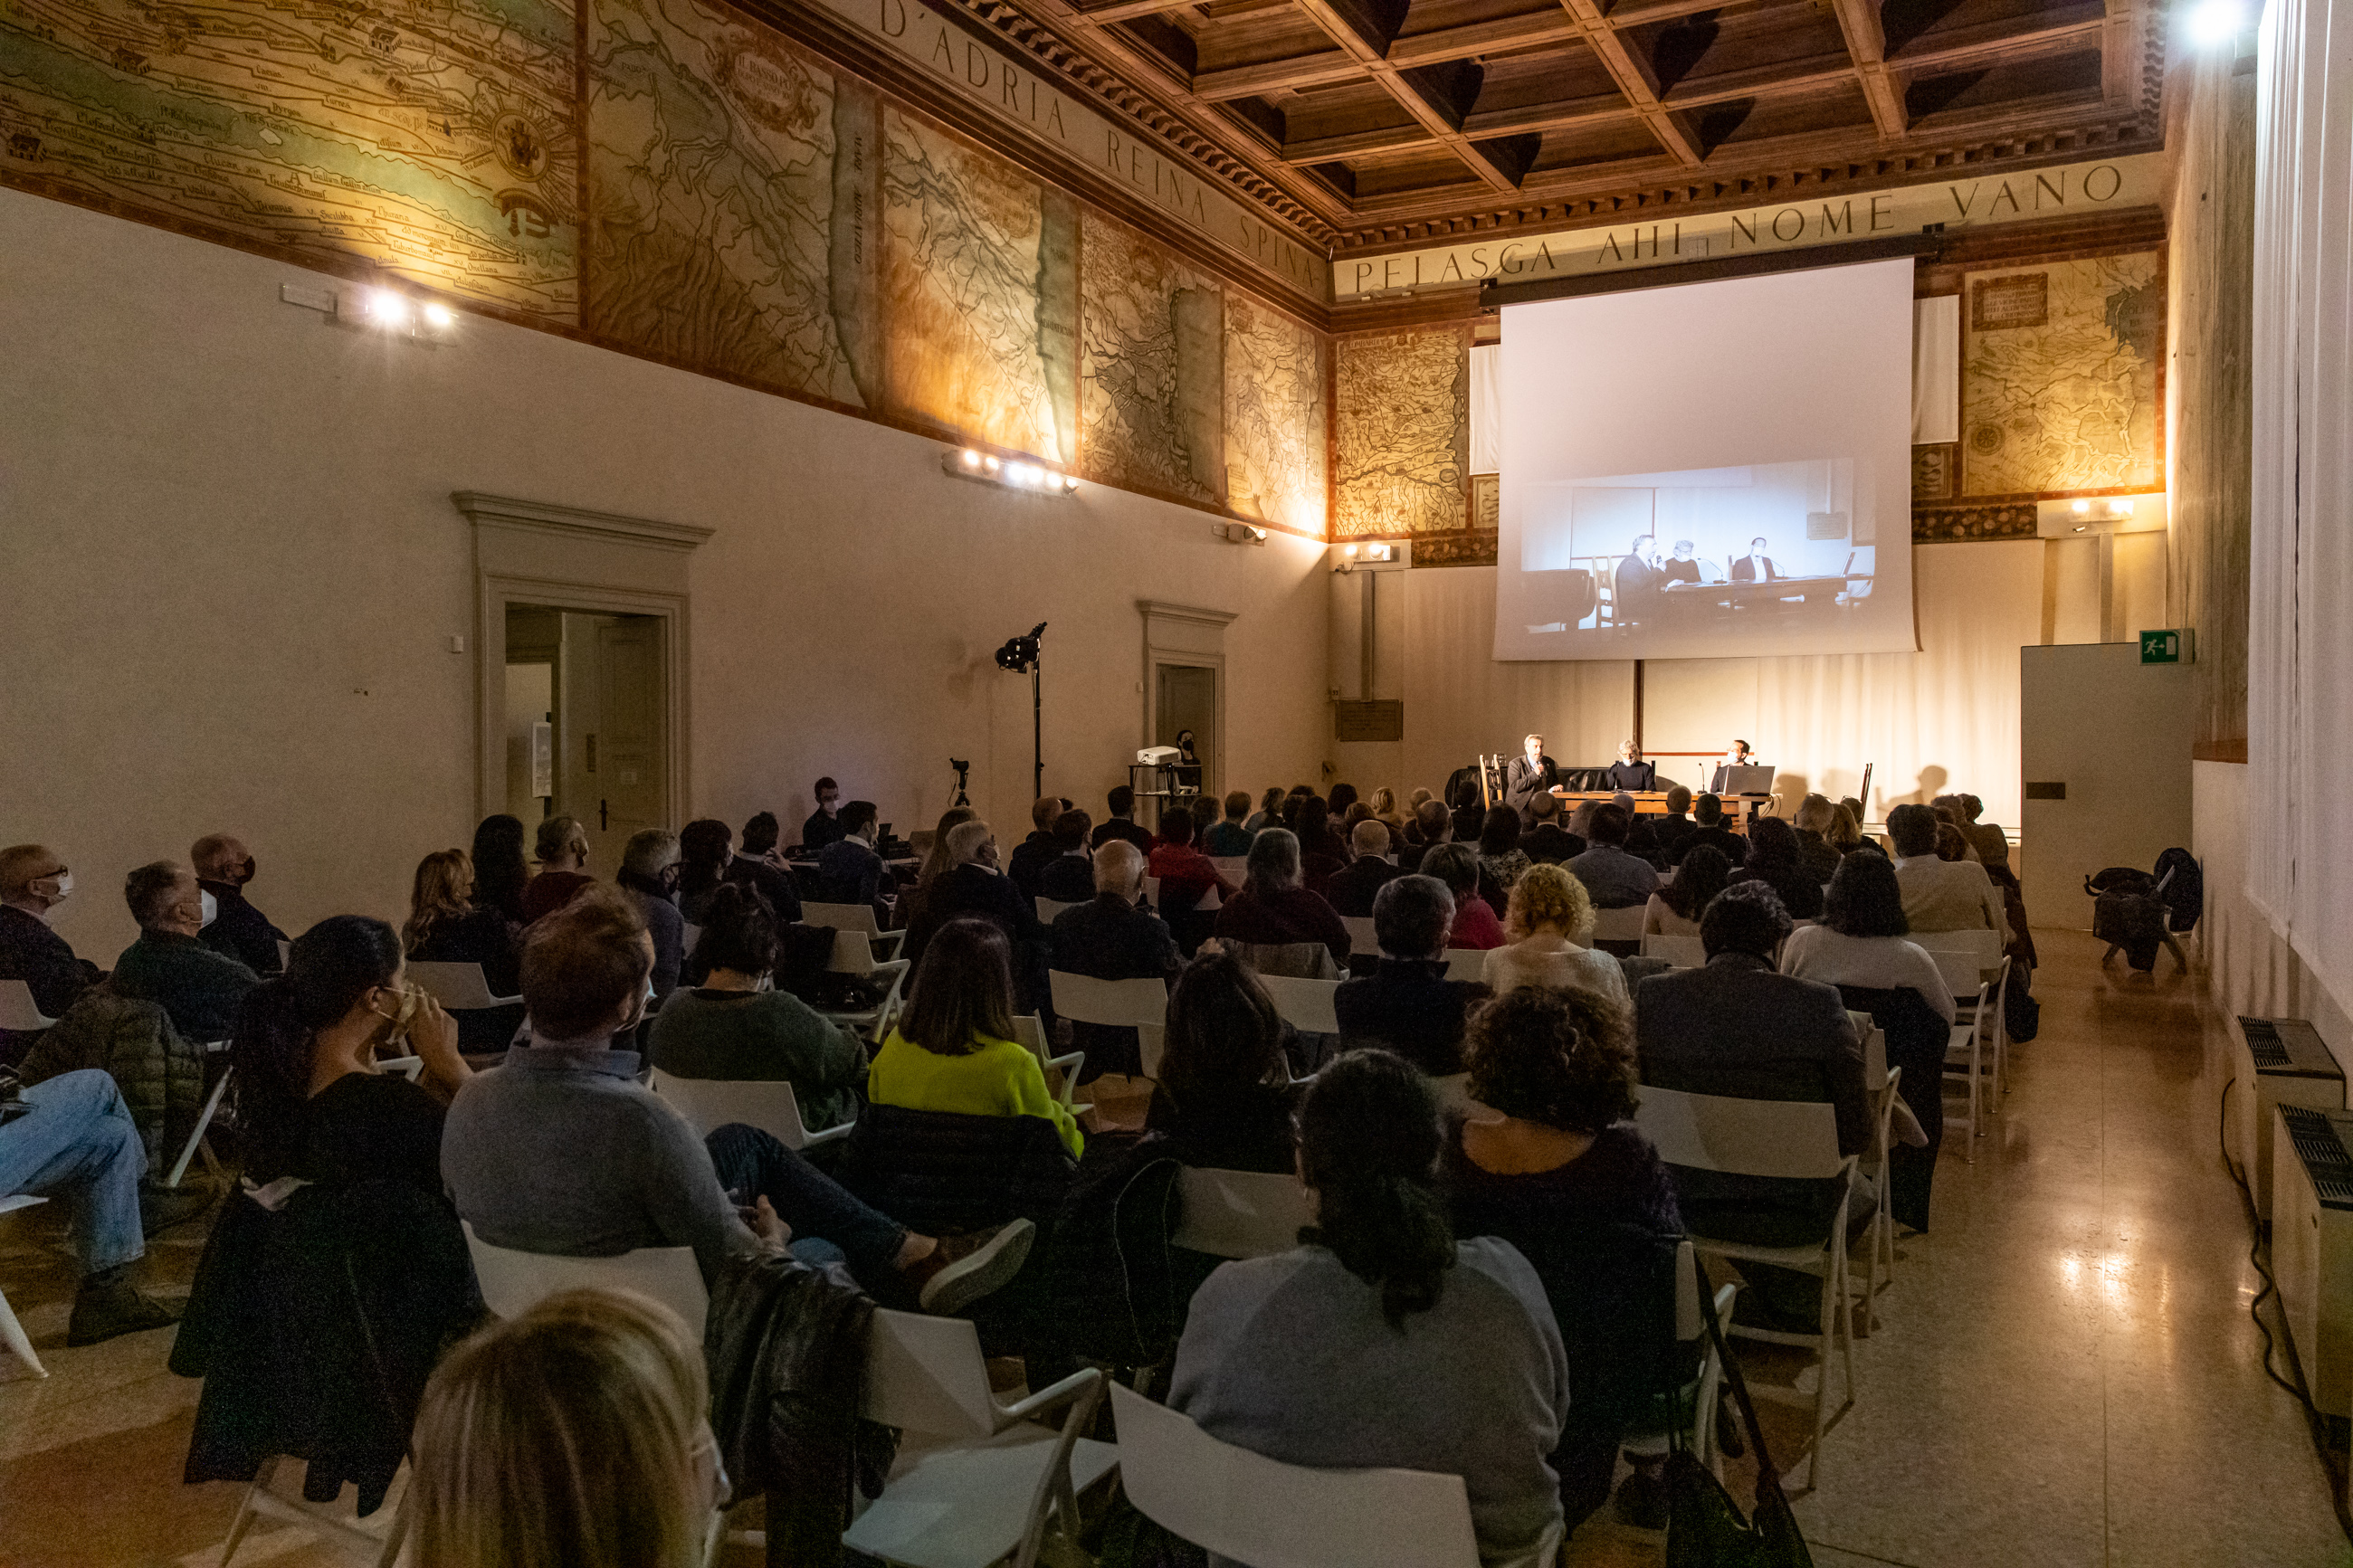 SINTONIE: una tavola rotonda ha dato il via al progetto triennale tra Direzione Regionale Musei ER, Assicoop Modena&Ferrara e Legacoop Estense